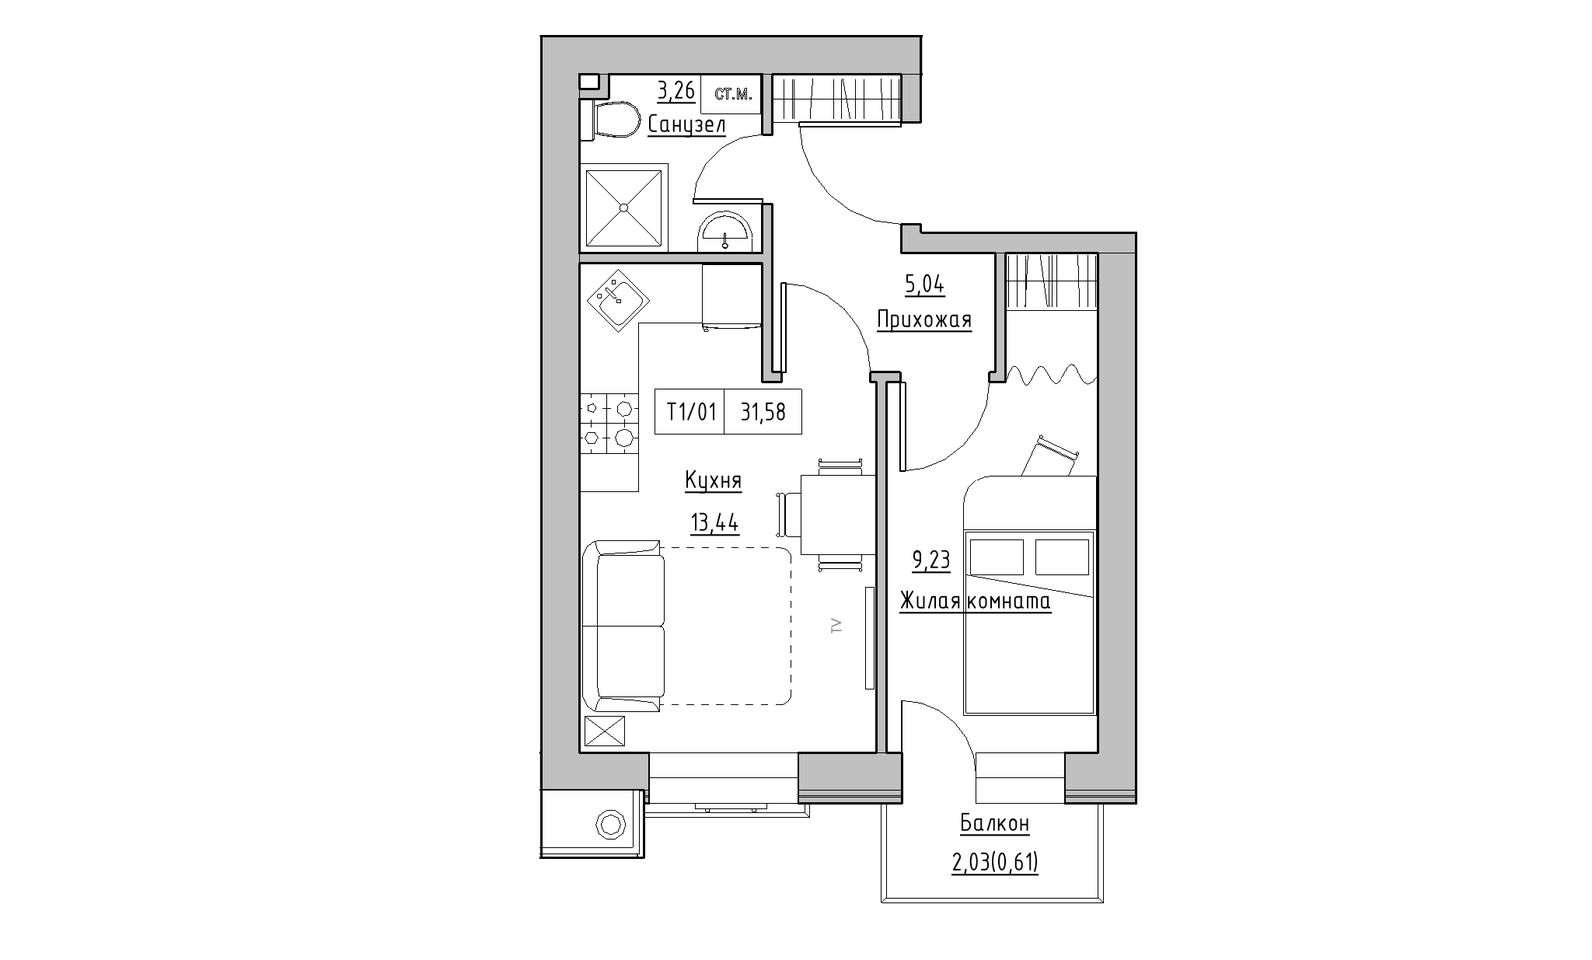 Планування 1-к квартира площею 31.58м2, KS-014-05/0003.